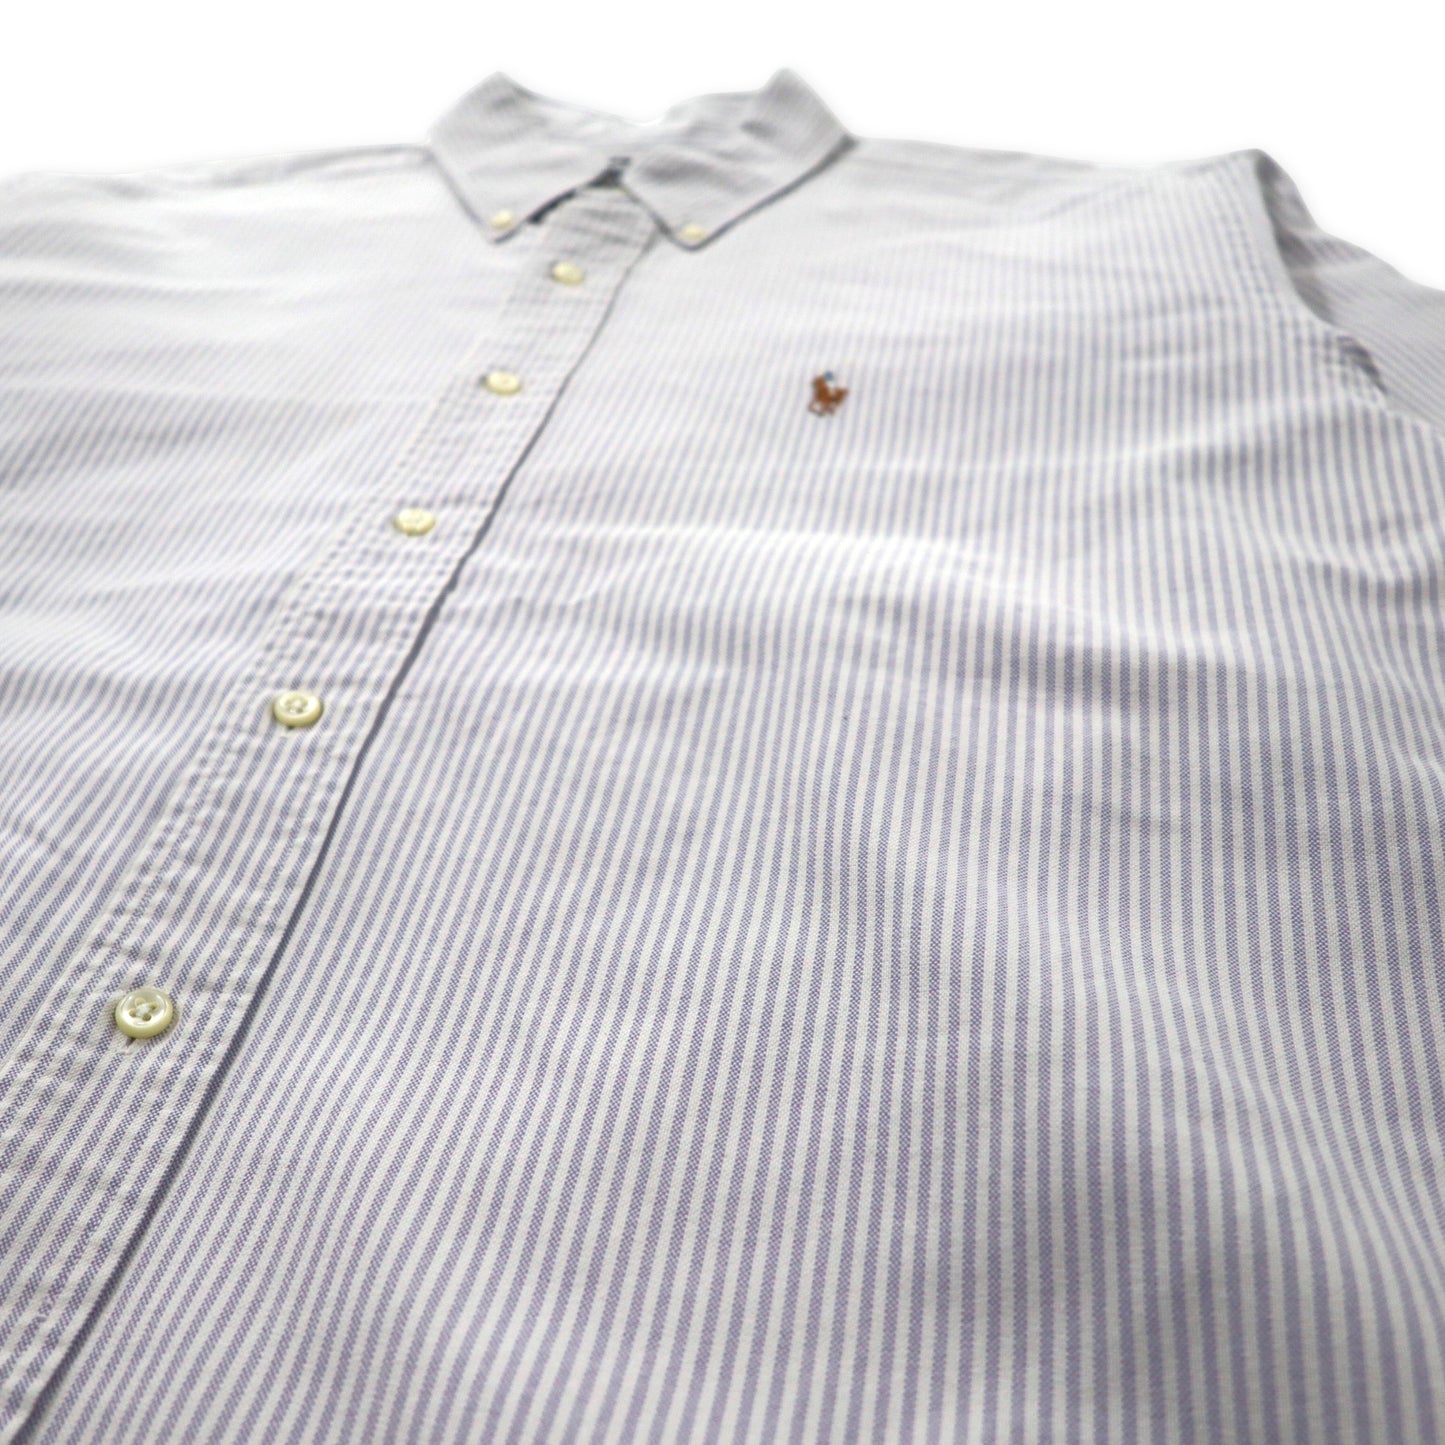 Ralph Lauren オックスフォード ボタンダウンシャツ 16 1/2-36 ブルー ホワイト ストライプ コットン YARMOUTH スモールポニー刺繍 ビッグサイズ